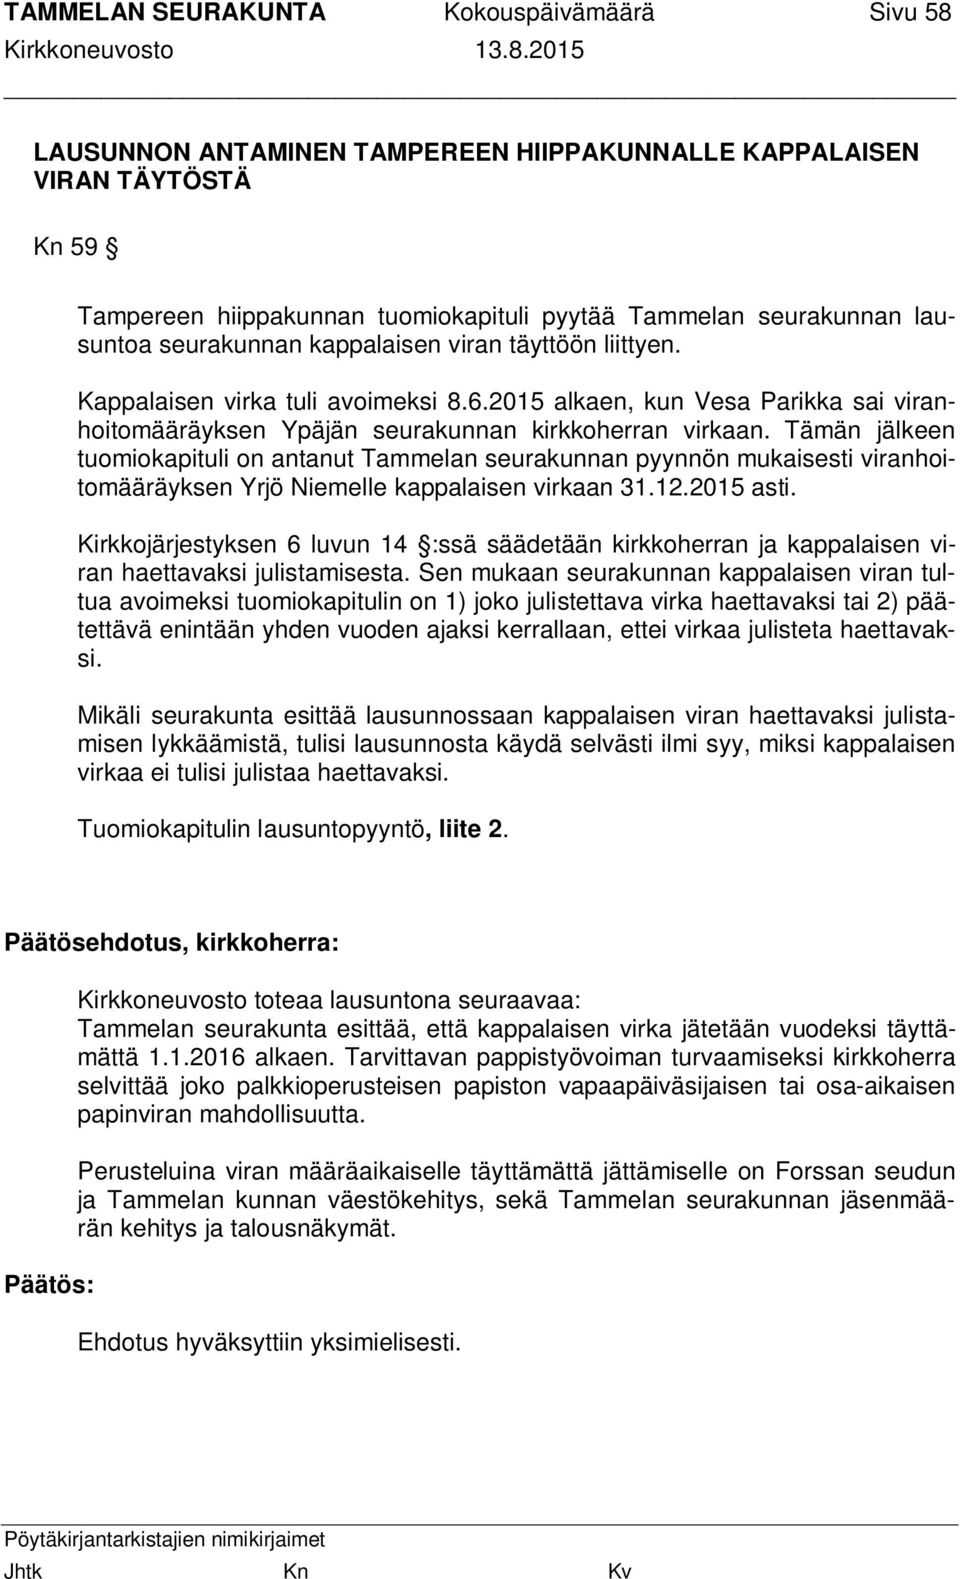 Tämän jälkeen tuomiokapituli on antanut Tammelan seurakunnan pyynnön mukaisesti viranhoitomääräyksen Yrjö Niemelle kappalaisen virkaan 31.12.2015 asti.